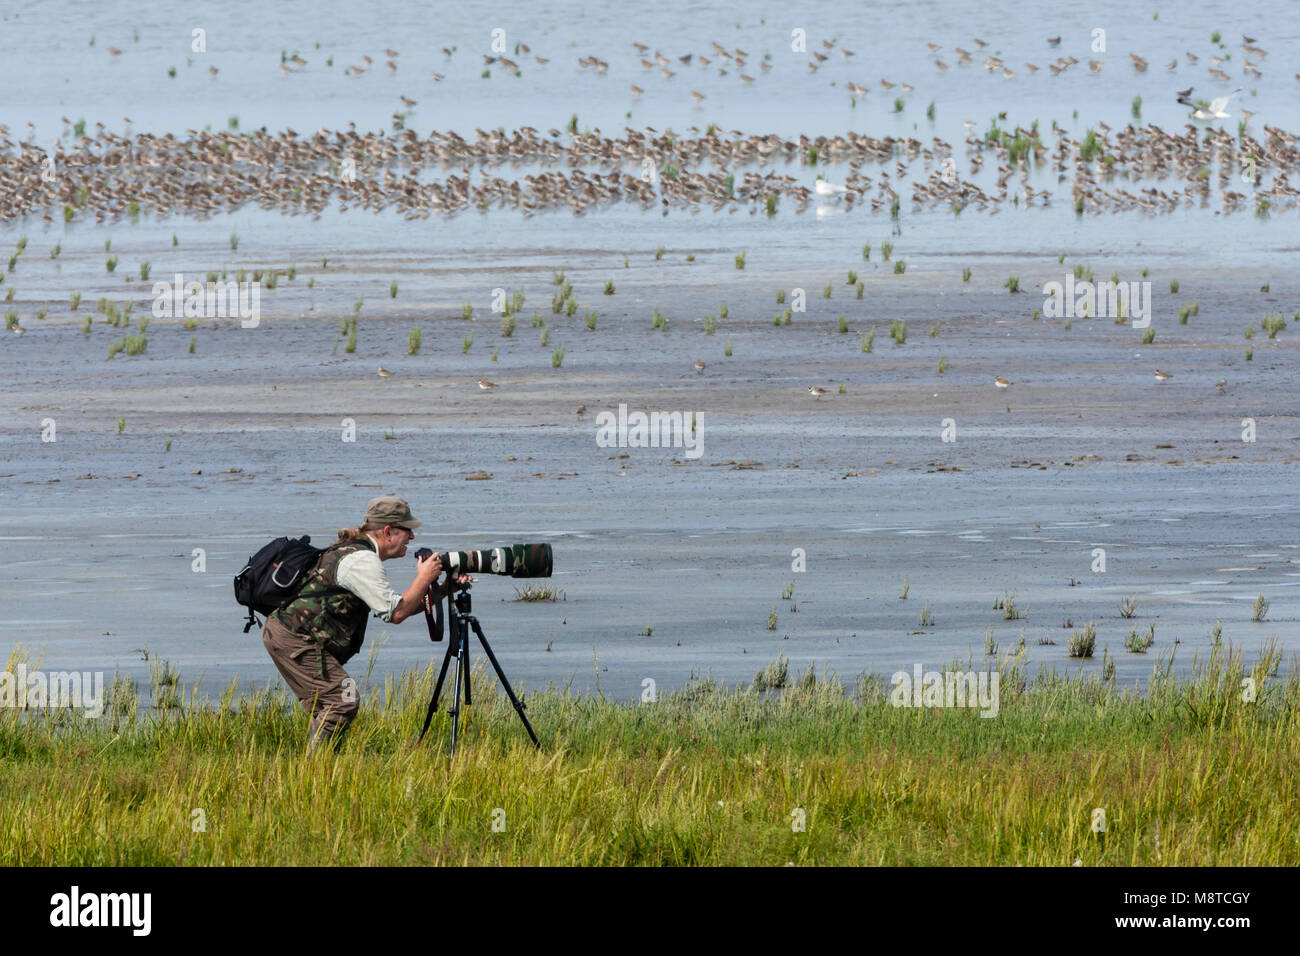 Homme fotografeert een zwerm vogels ; l'homme photographié une volée d'oiseaux Banque D'Images